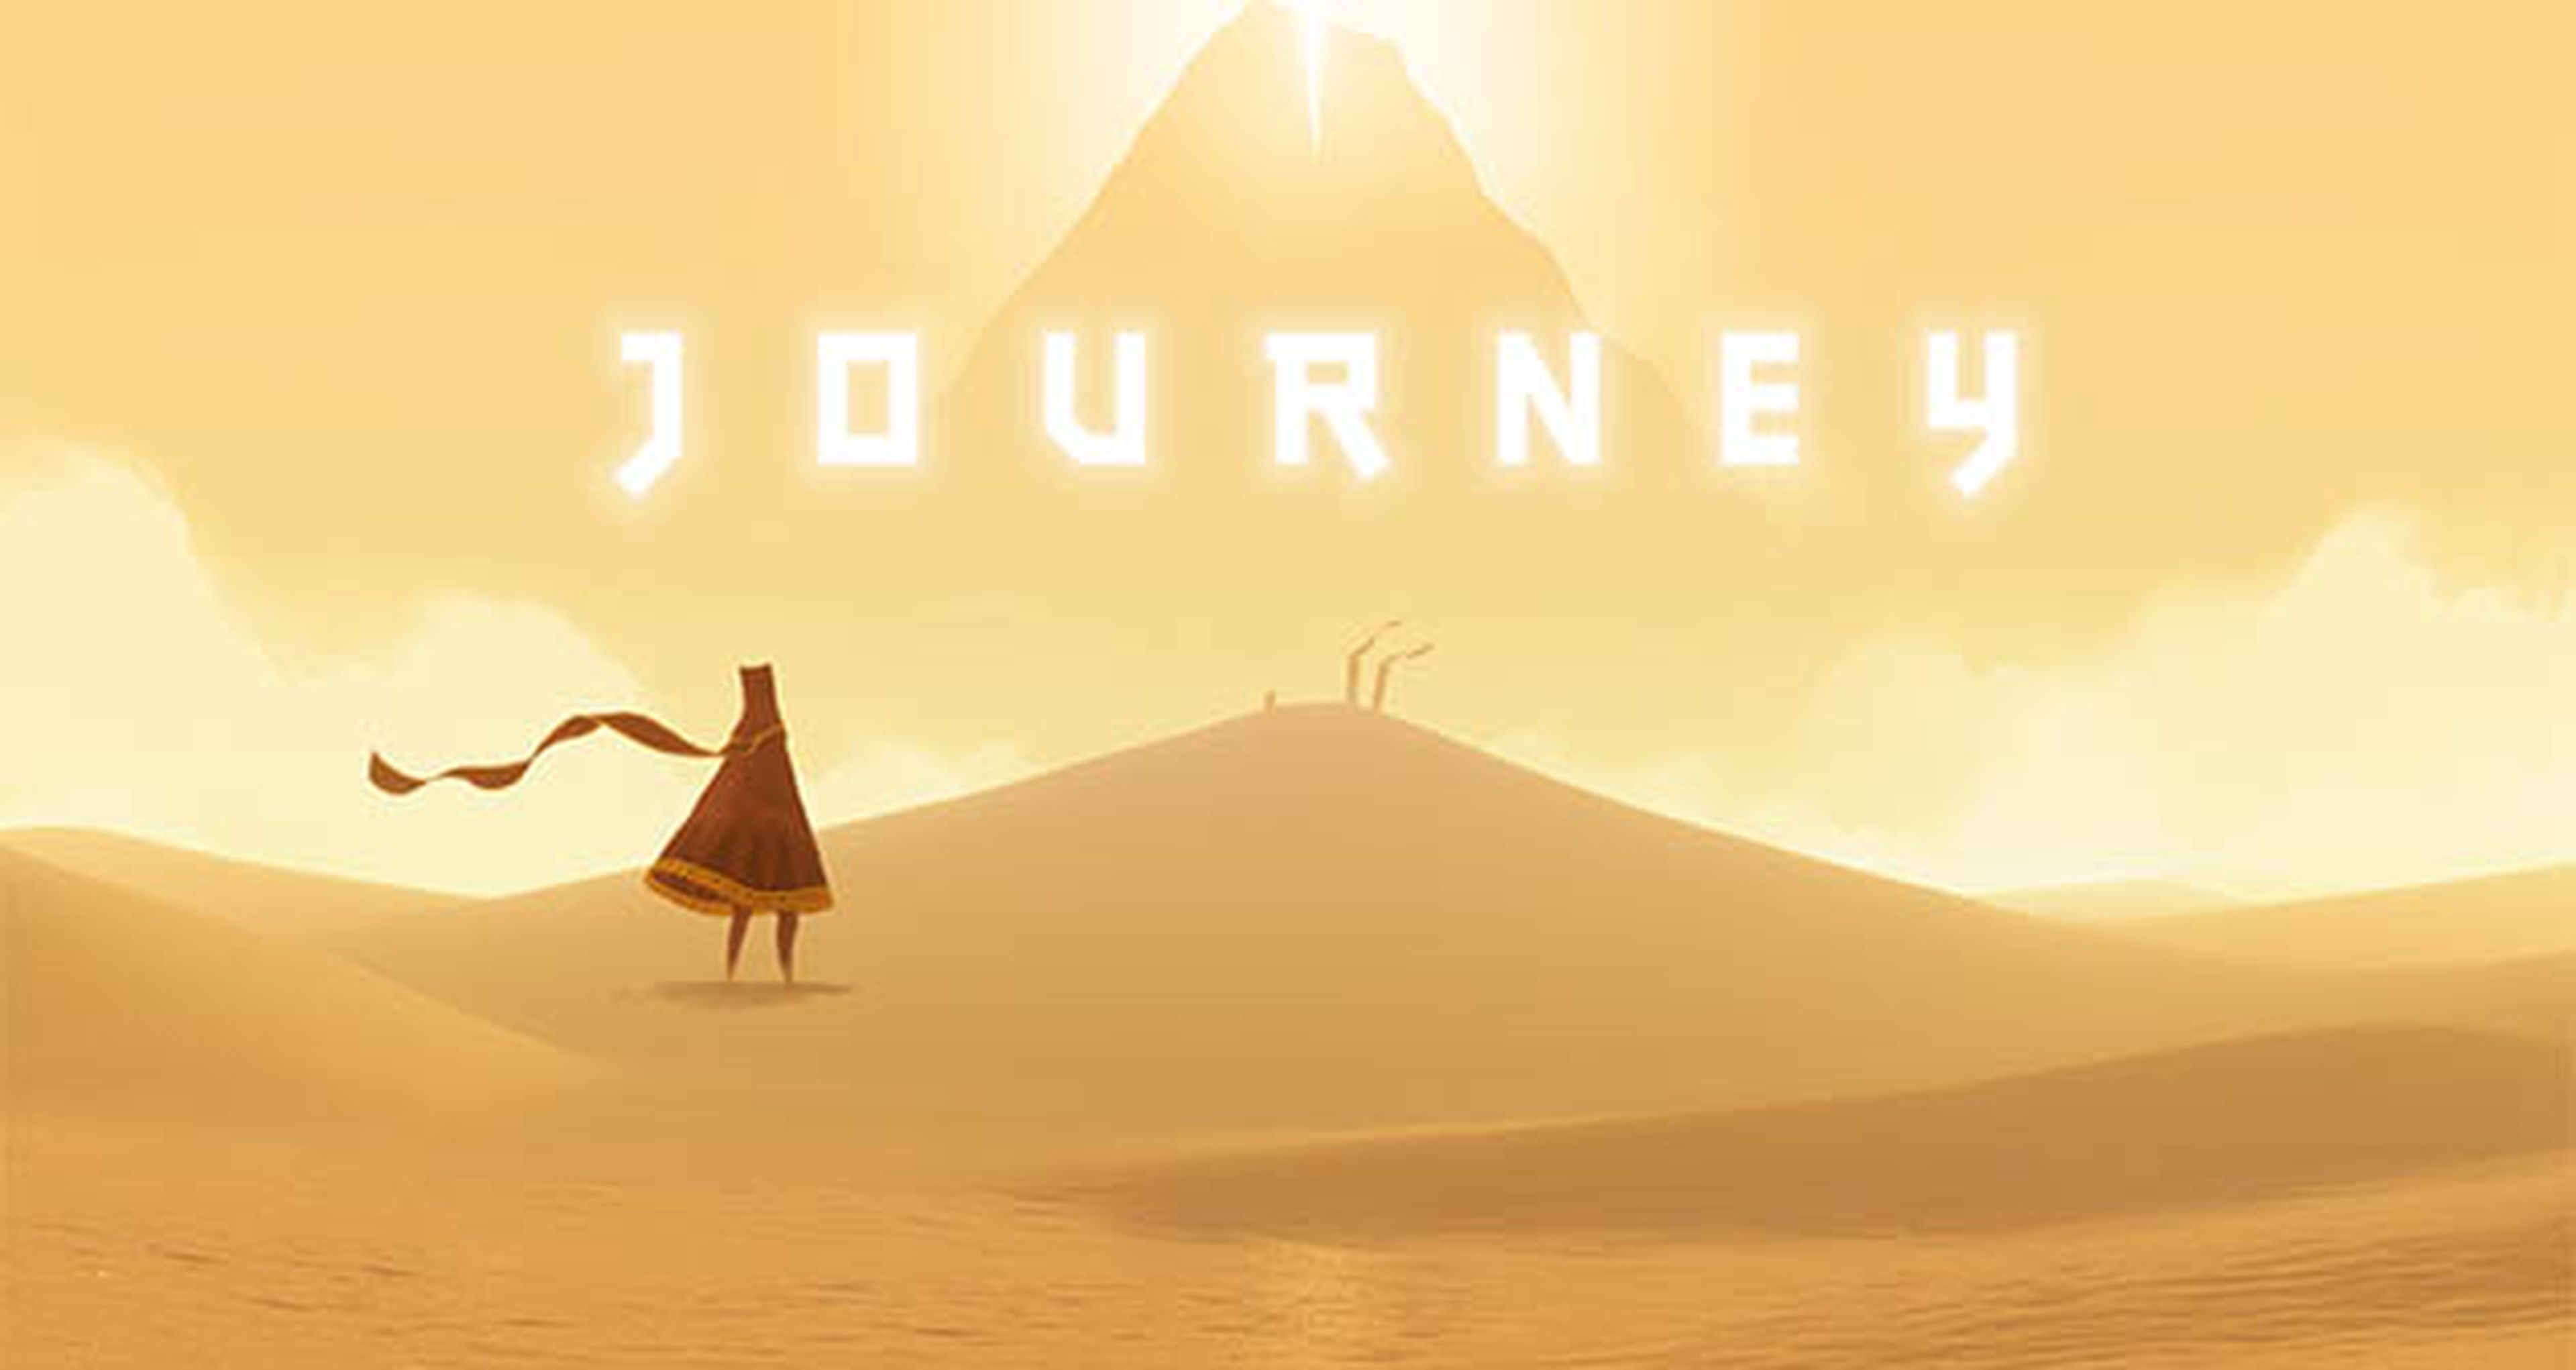 Journey para PS4: Se filtra la fecha de lanzamiento